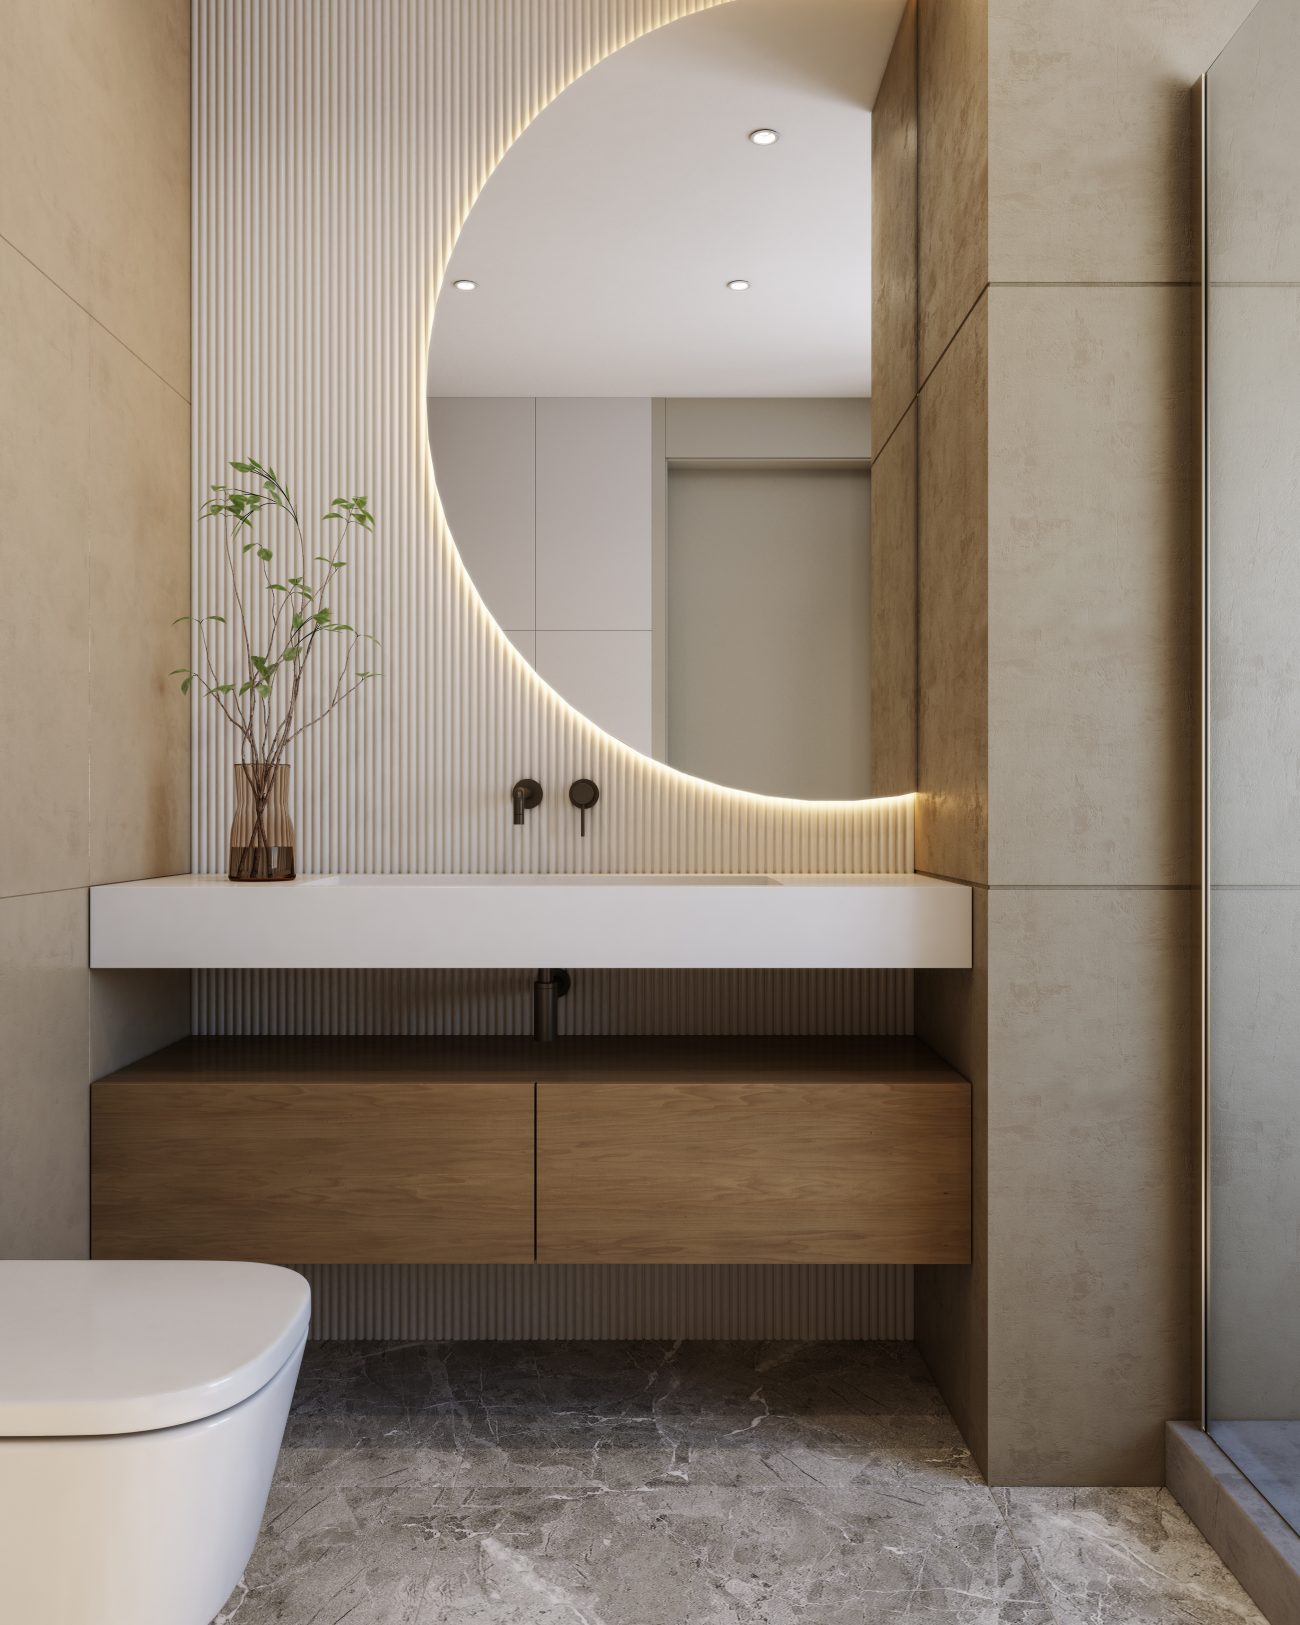 Salle de bain rationaliste avec vanité flottante, gros miroir en demi-lune et mur nervuré